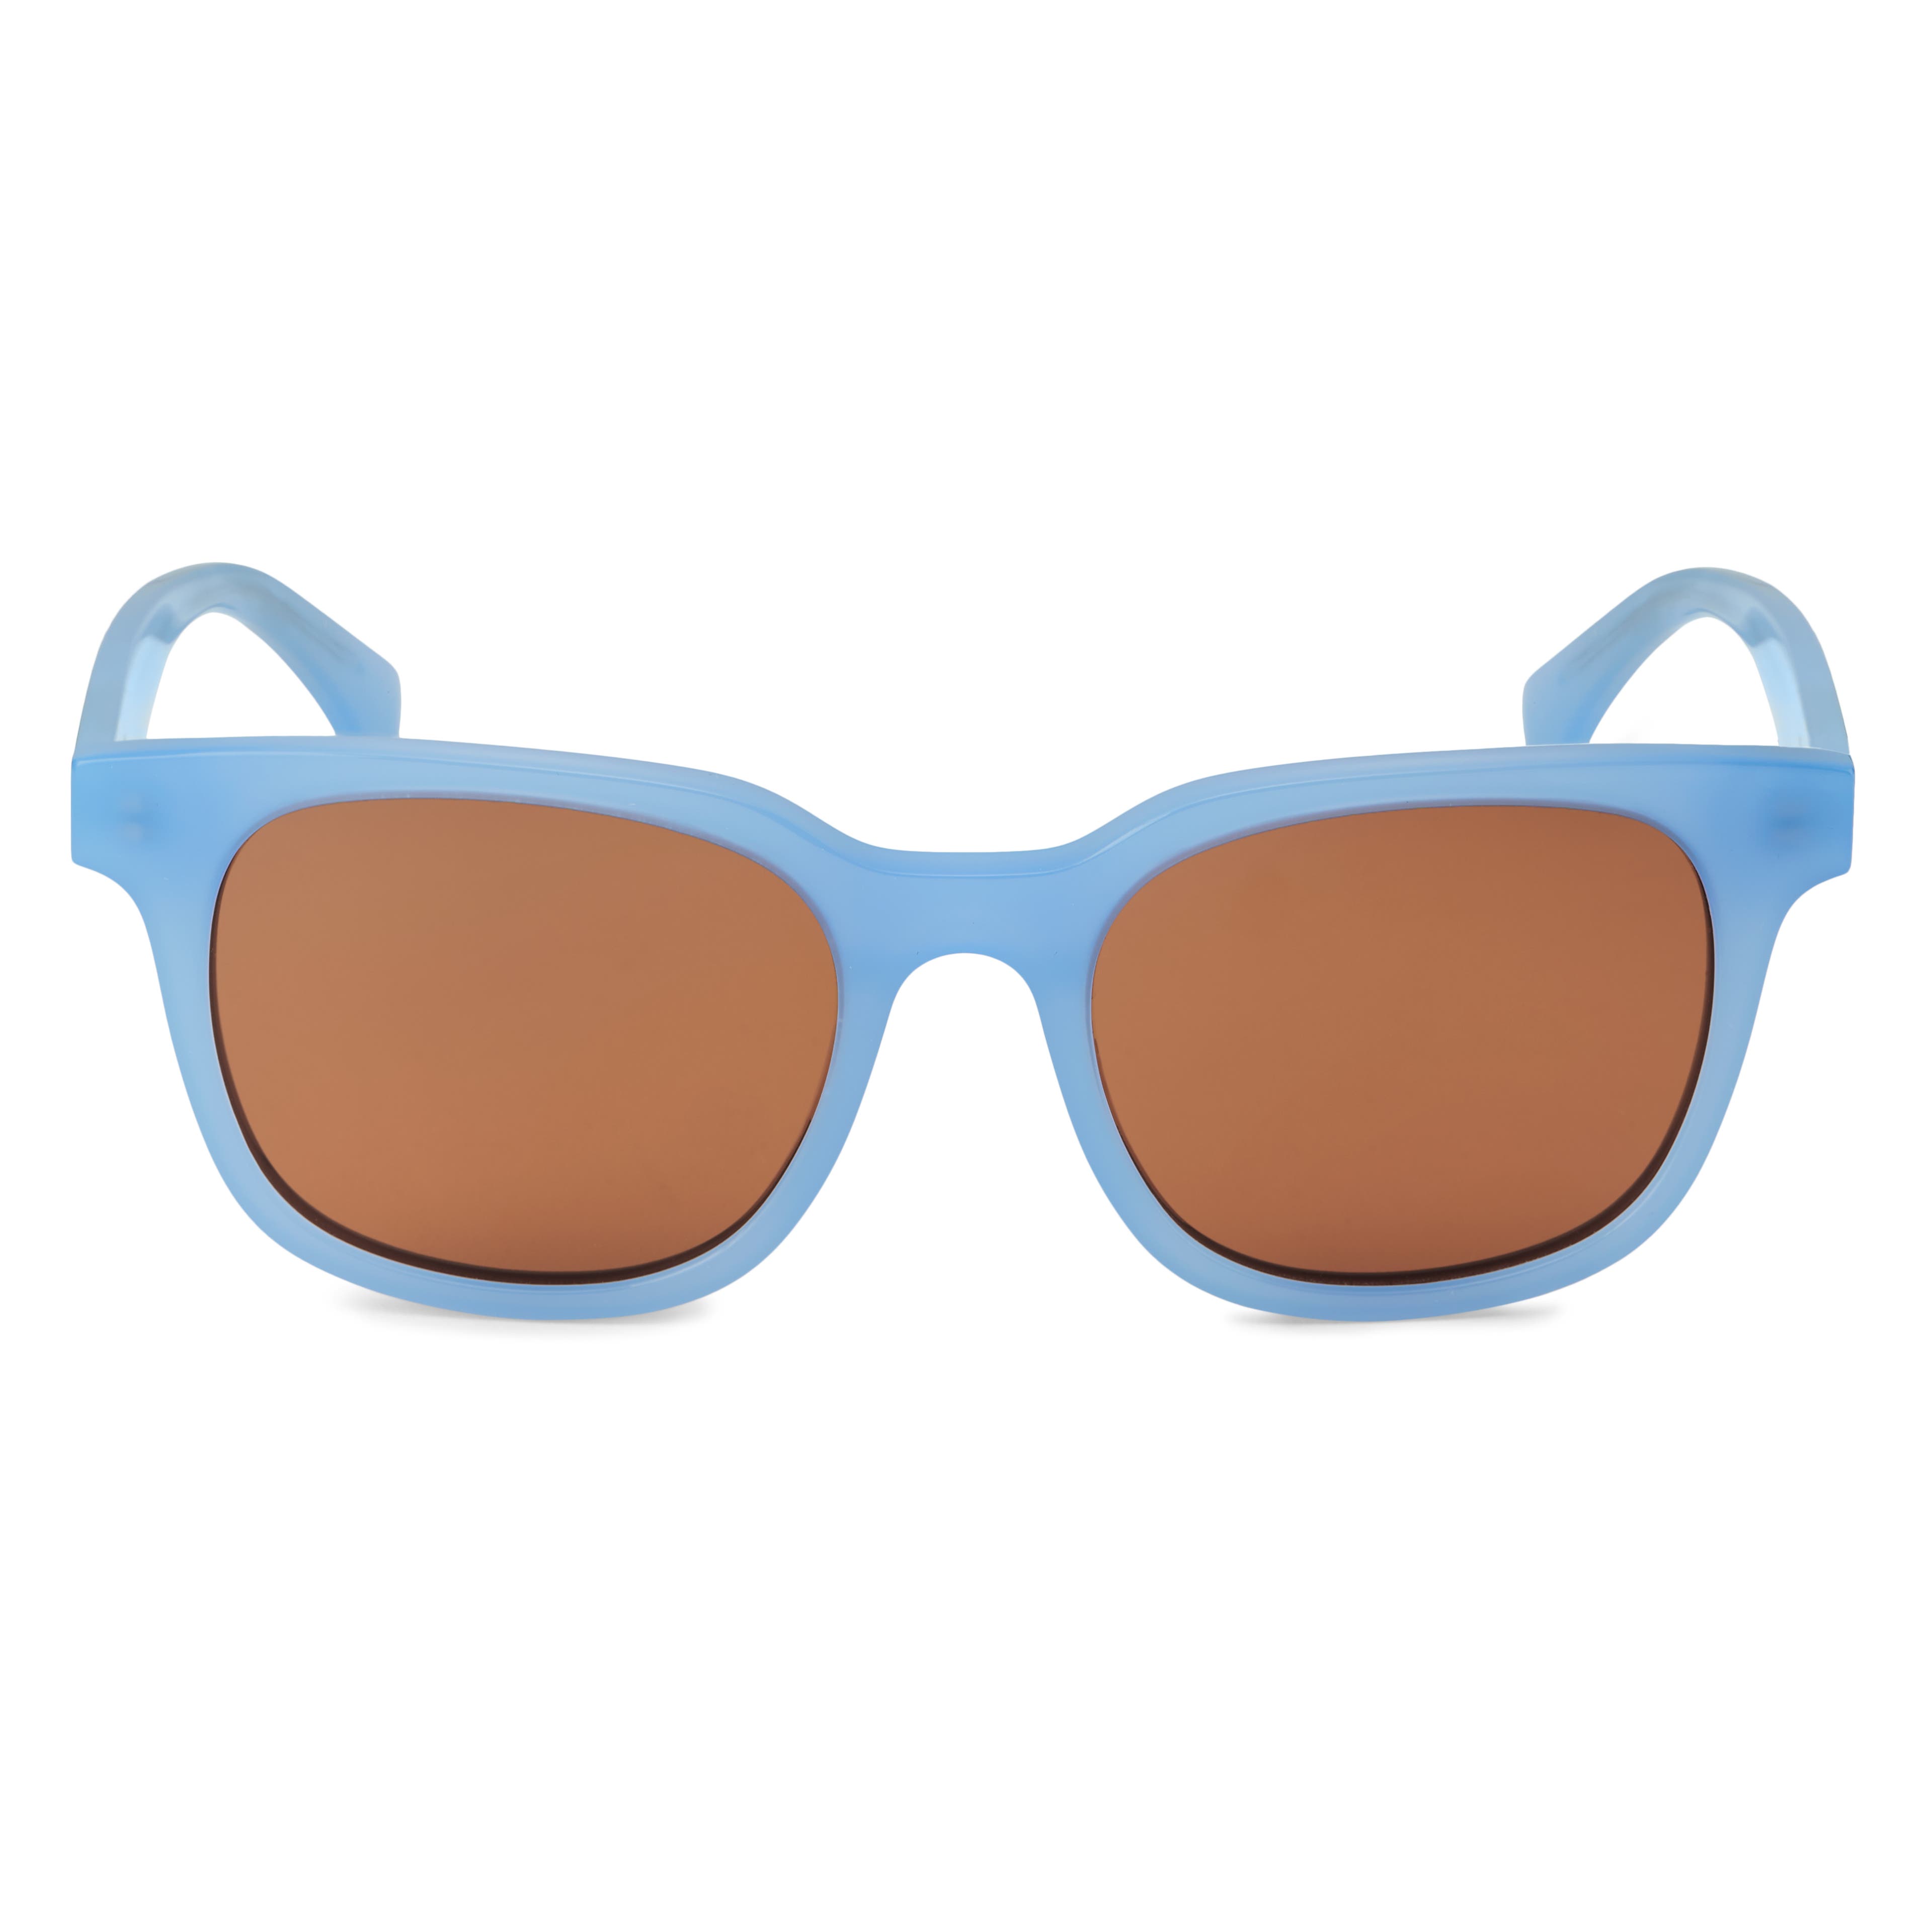 Modré polarizačné slnečné okuliare Wilder Thea s hnedými šošovkami